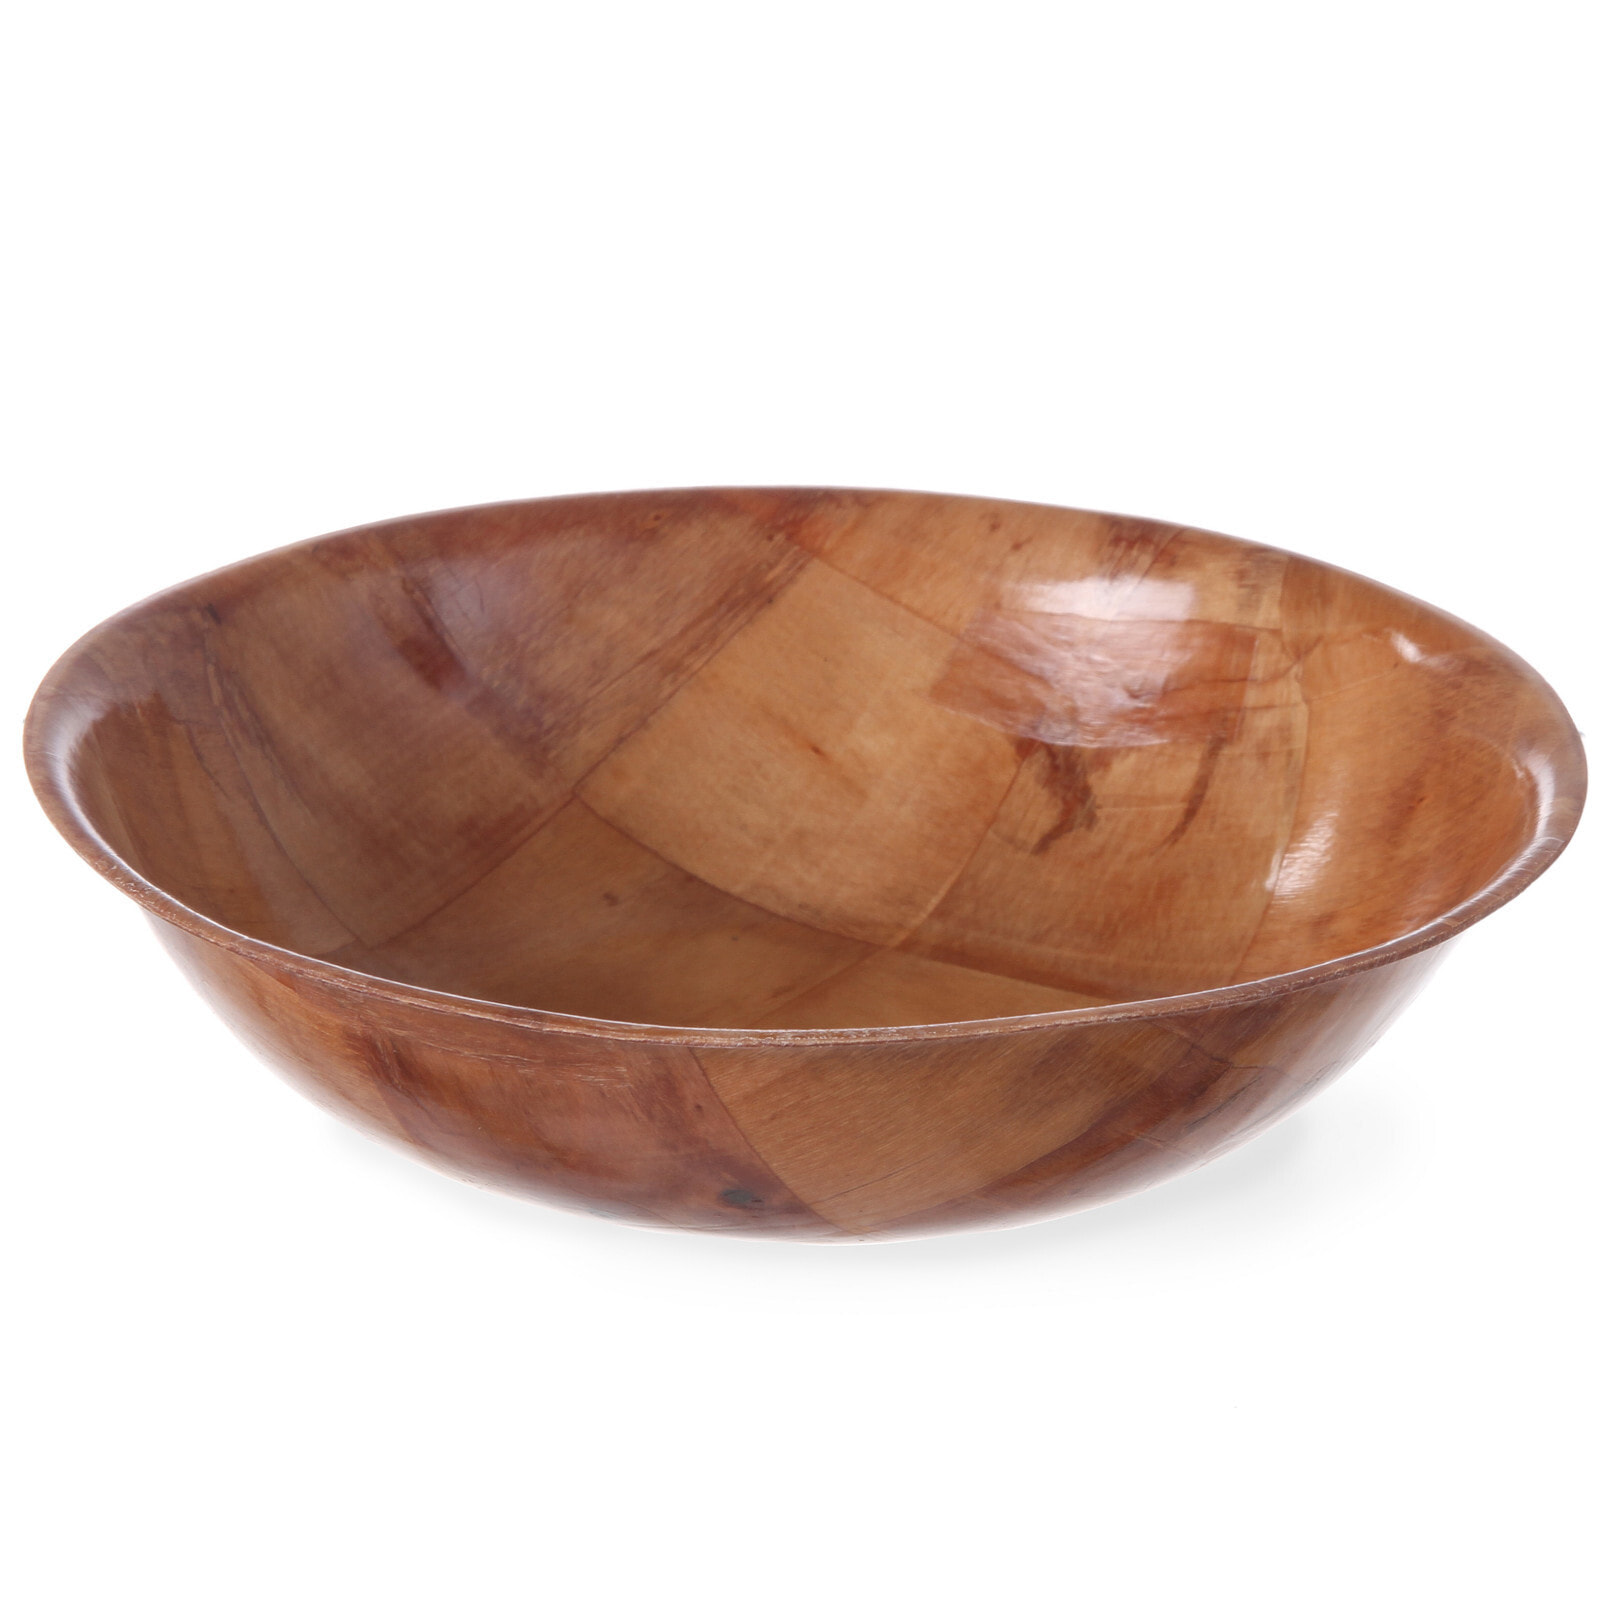 Wooden round kitchen bowl, diameter 200mm height 50mm - Hendi 425800